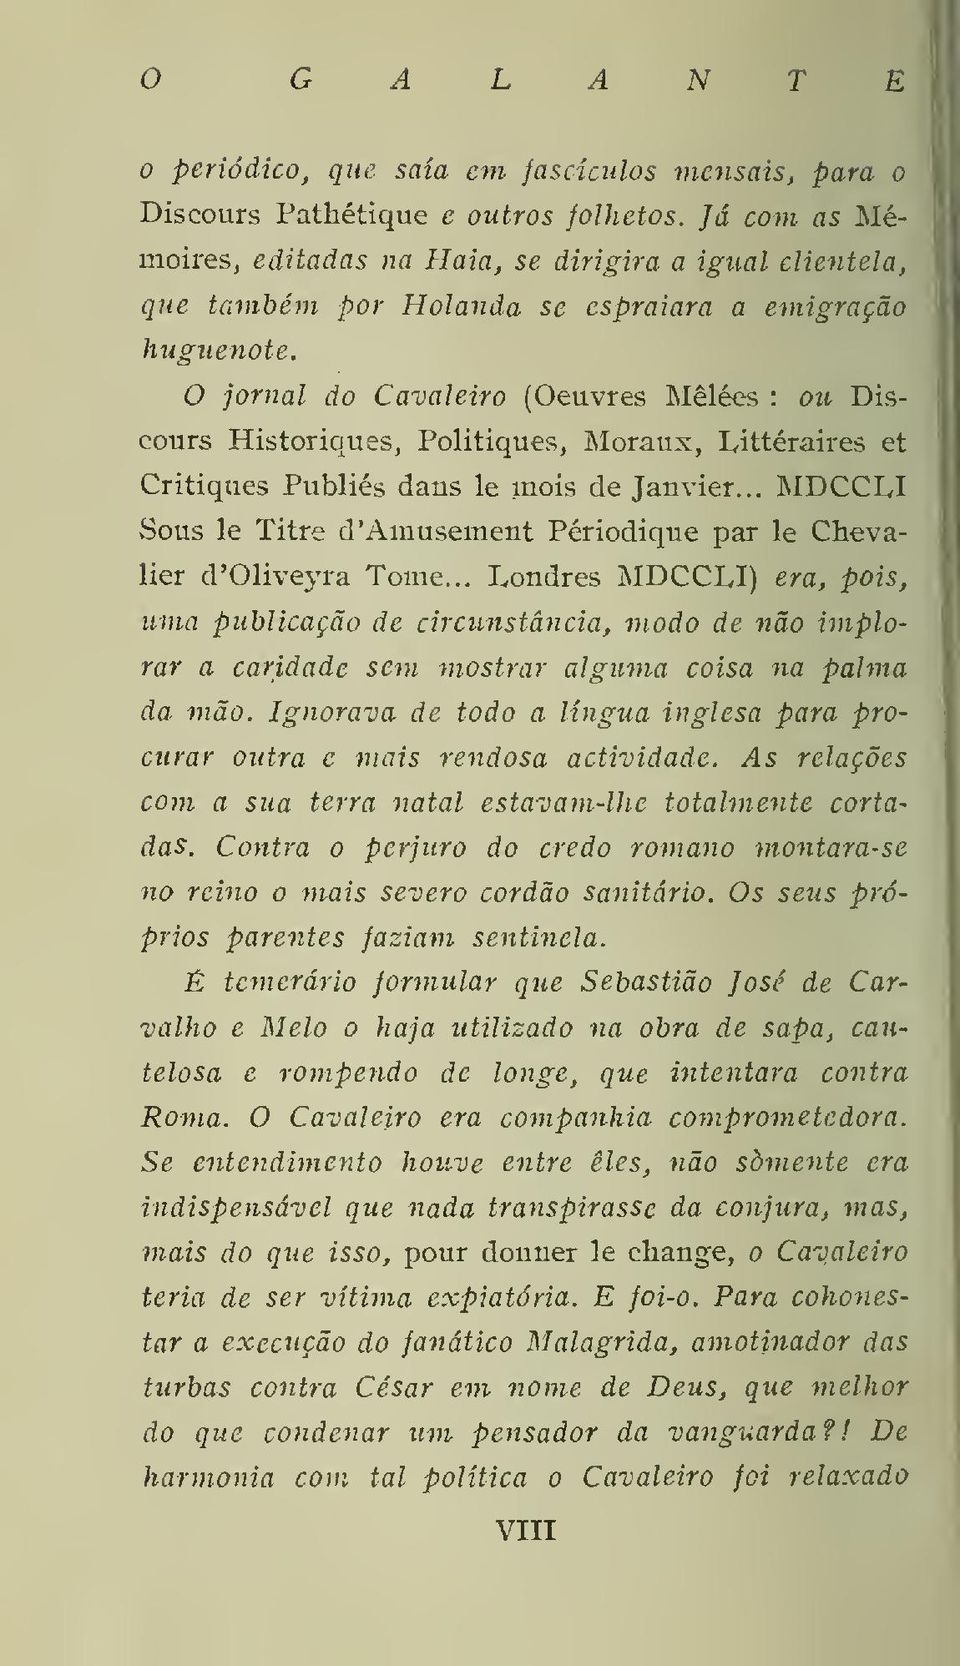 O jornal do Cavaleiro (Oeuvres Mêlées : ou Discours Historiques, Politiques, Moraux, Littéraires et Critiques Publiés dans le inois de Janvier.